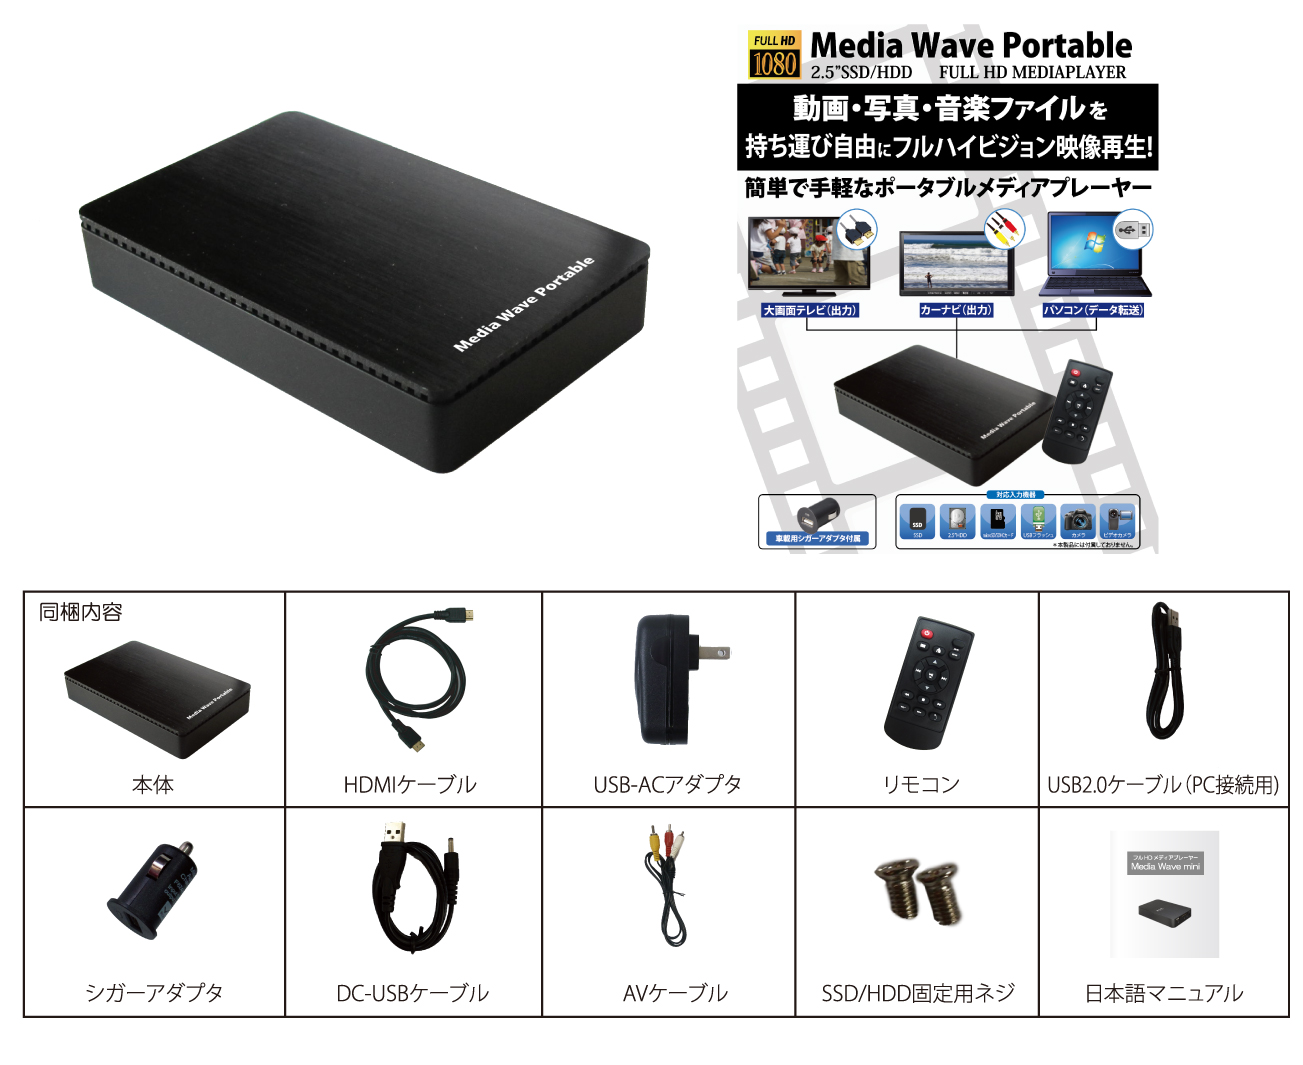 持運び自由フルハイビジョン対応 ポータブルメディアプレーヤー MEDIAWAVE Portable アイティプロテック